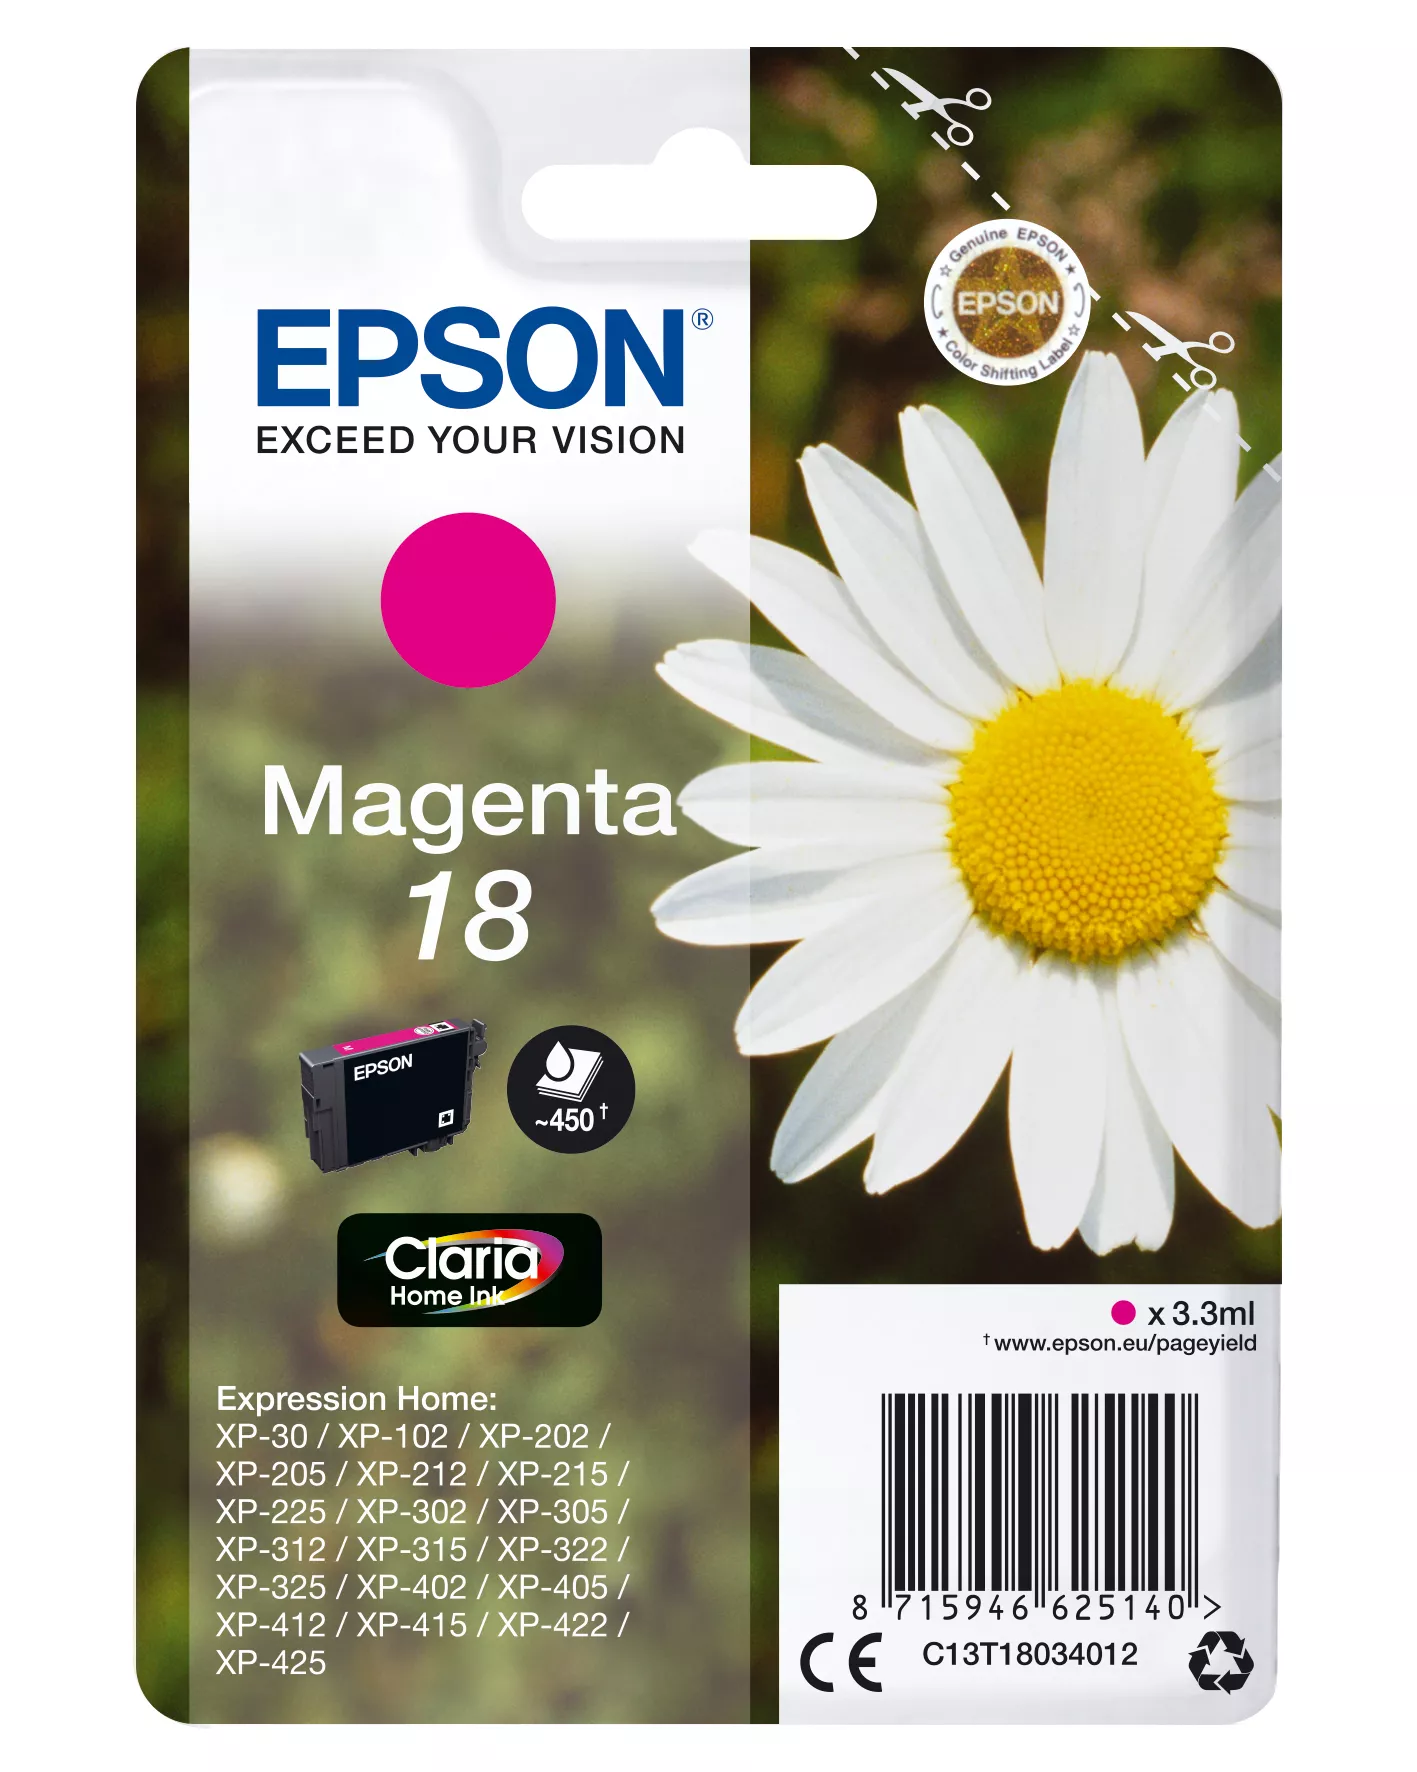 Vente EPSON 18 cartouche dencre magenta capacité standard 3.3ml au meilleur prix